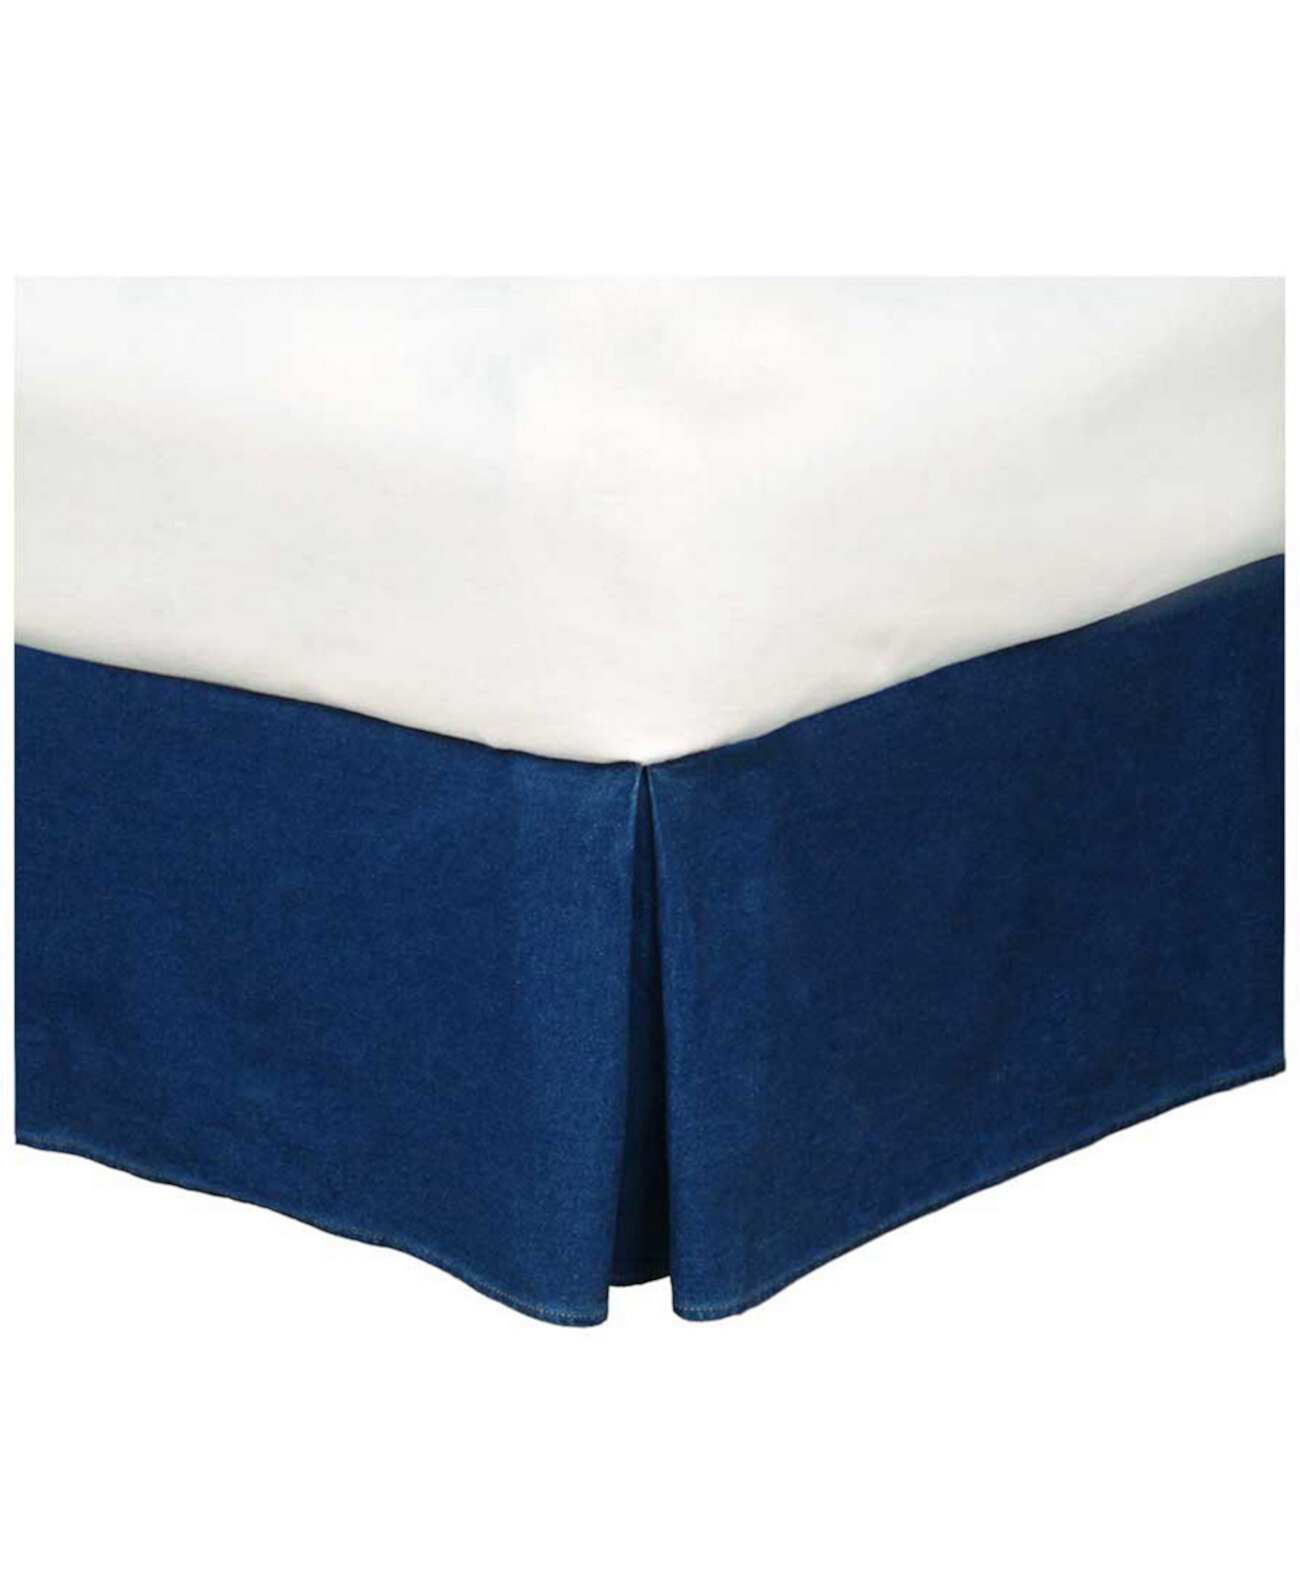 Джинсовая юбка-кровать размера «queen-size» в американском стиле Karin Maki